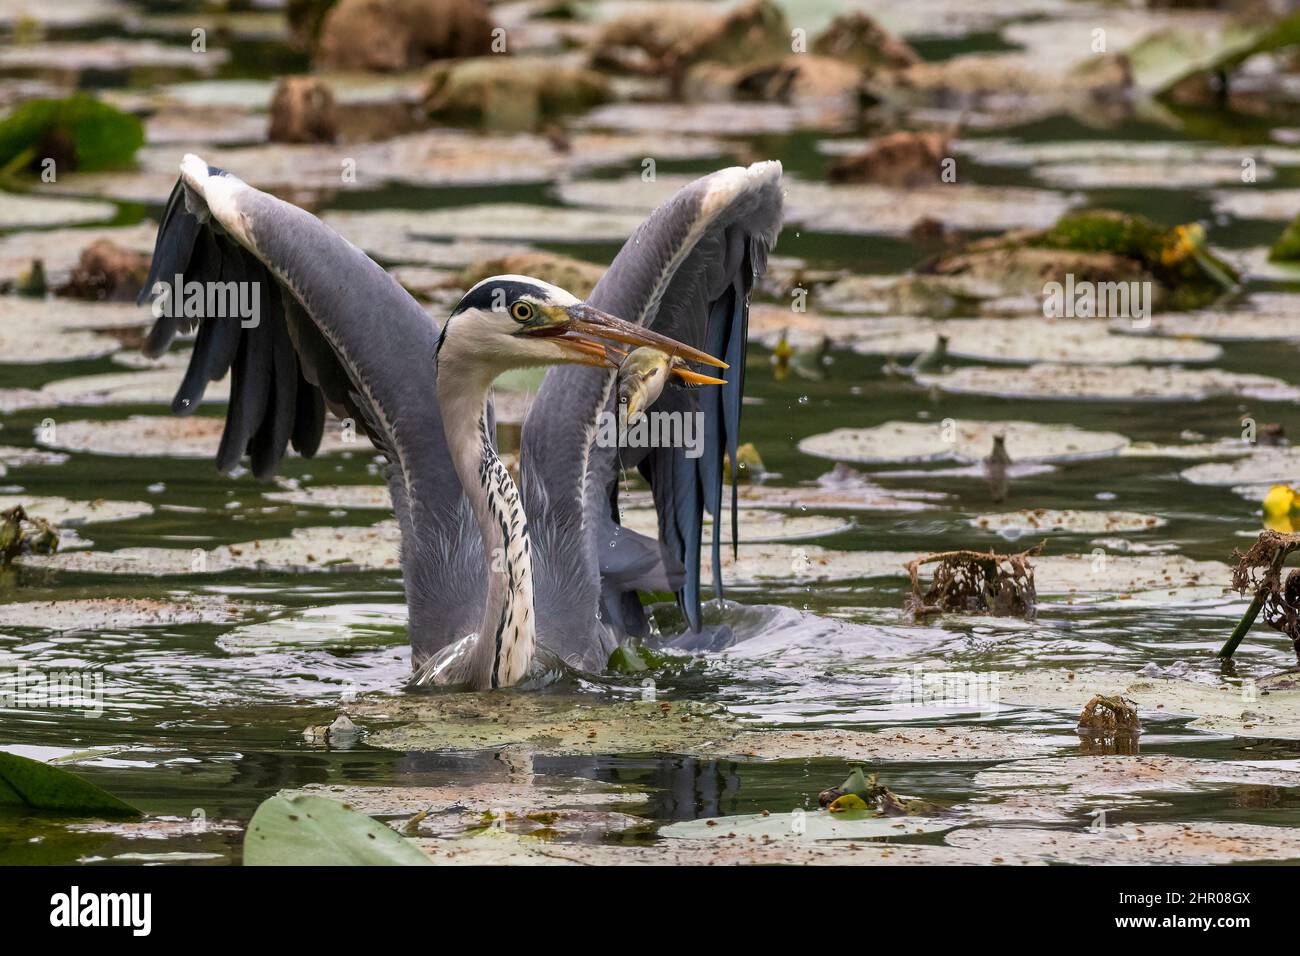 Un airone cinerino ha appena pescato un pesce tra le acque dell'Oasi Lipu di Torrile (Parma, Italy) Stock Photo